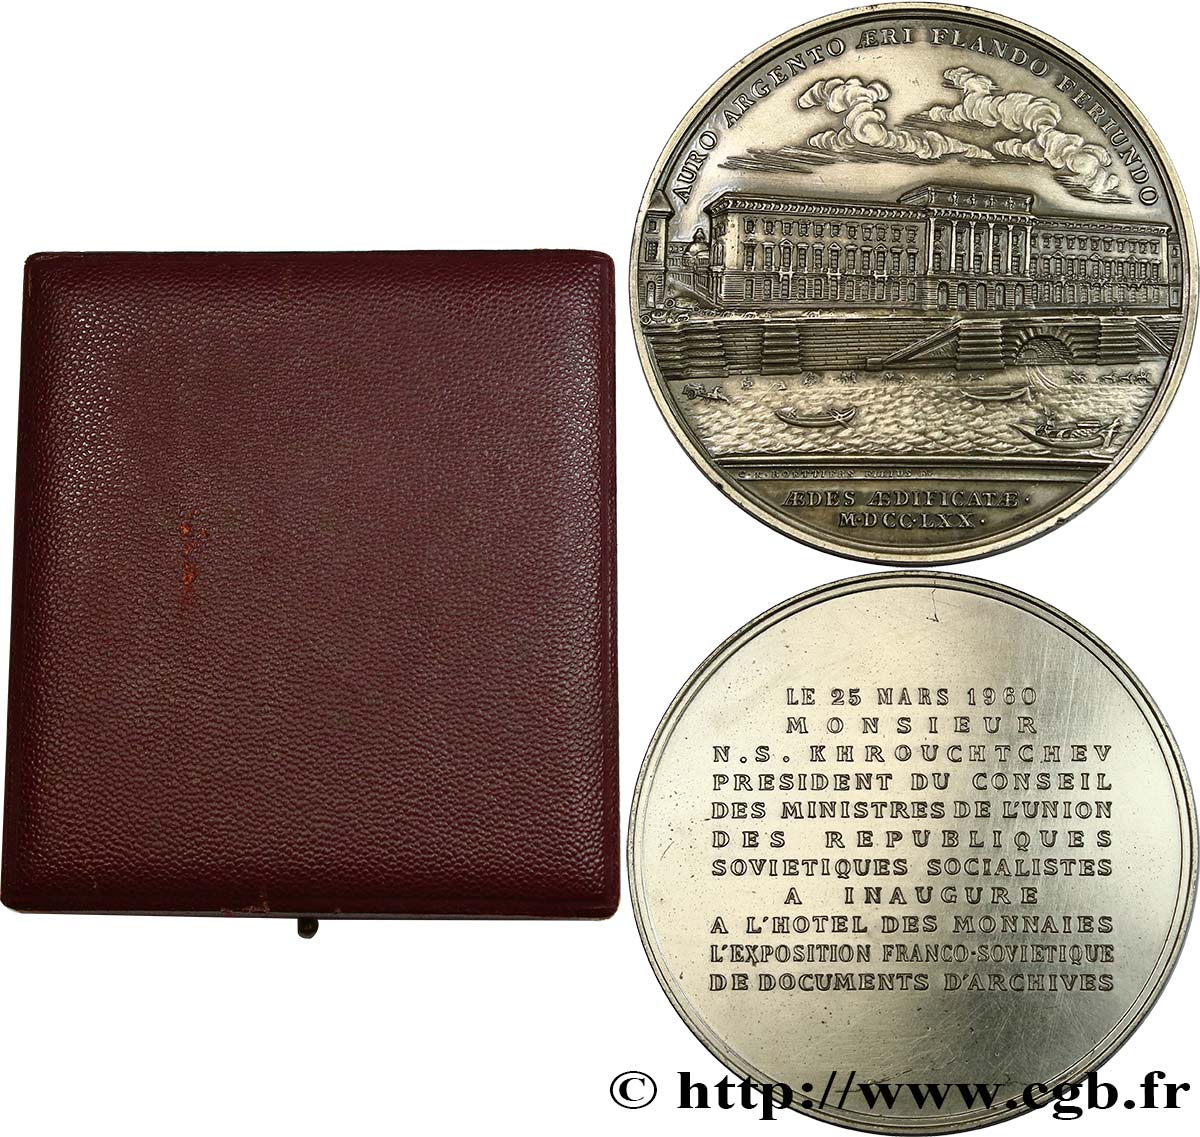 V REPUBLIC Médaille pour la visite de la Monnaie, exposition franco-soviétique AU